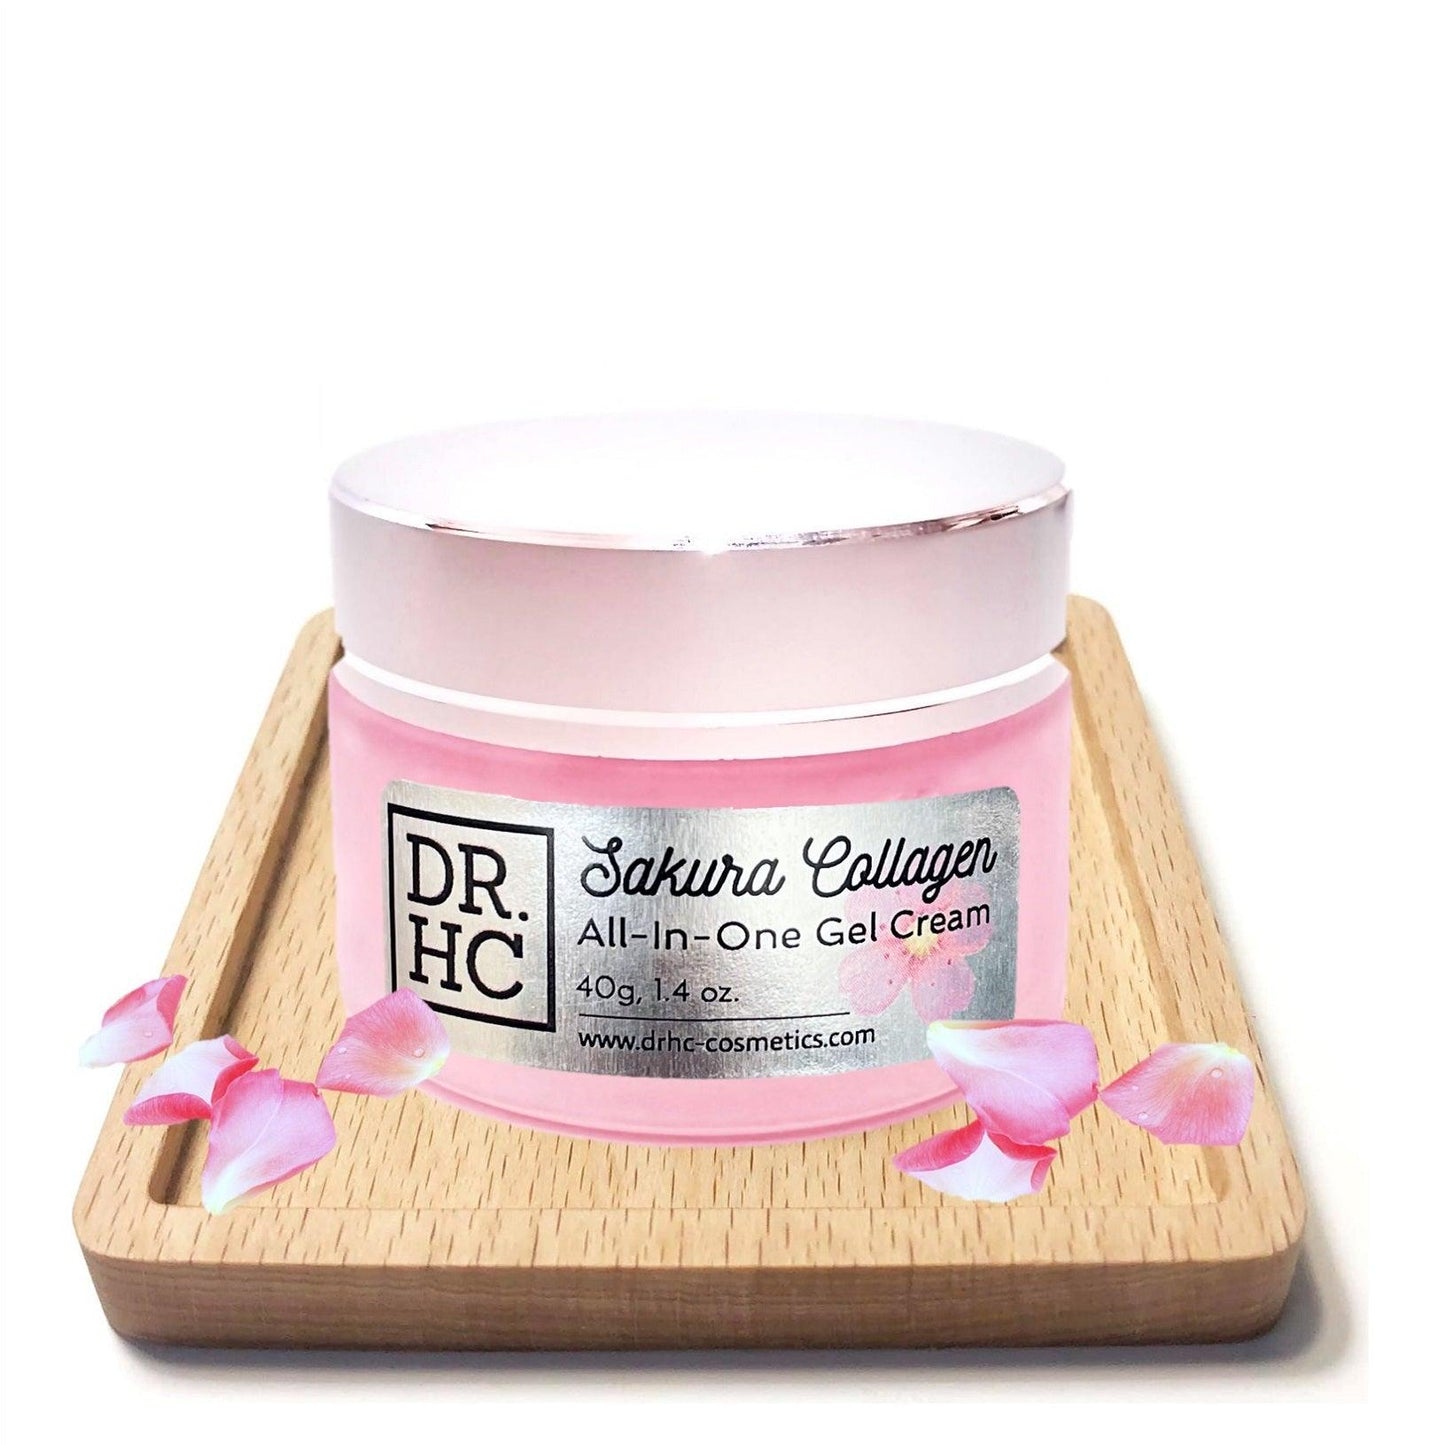 DR.HC Sakura Collagen All-In-One Gel Cream (25~40g, 0.9~1.4oz.) (Collagen support, Skin firming, Brightening, Anti-scar...)-2